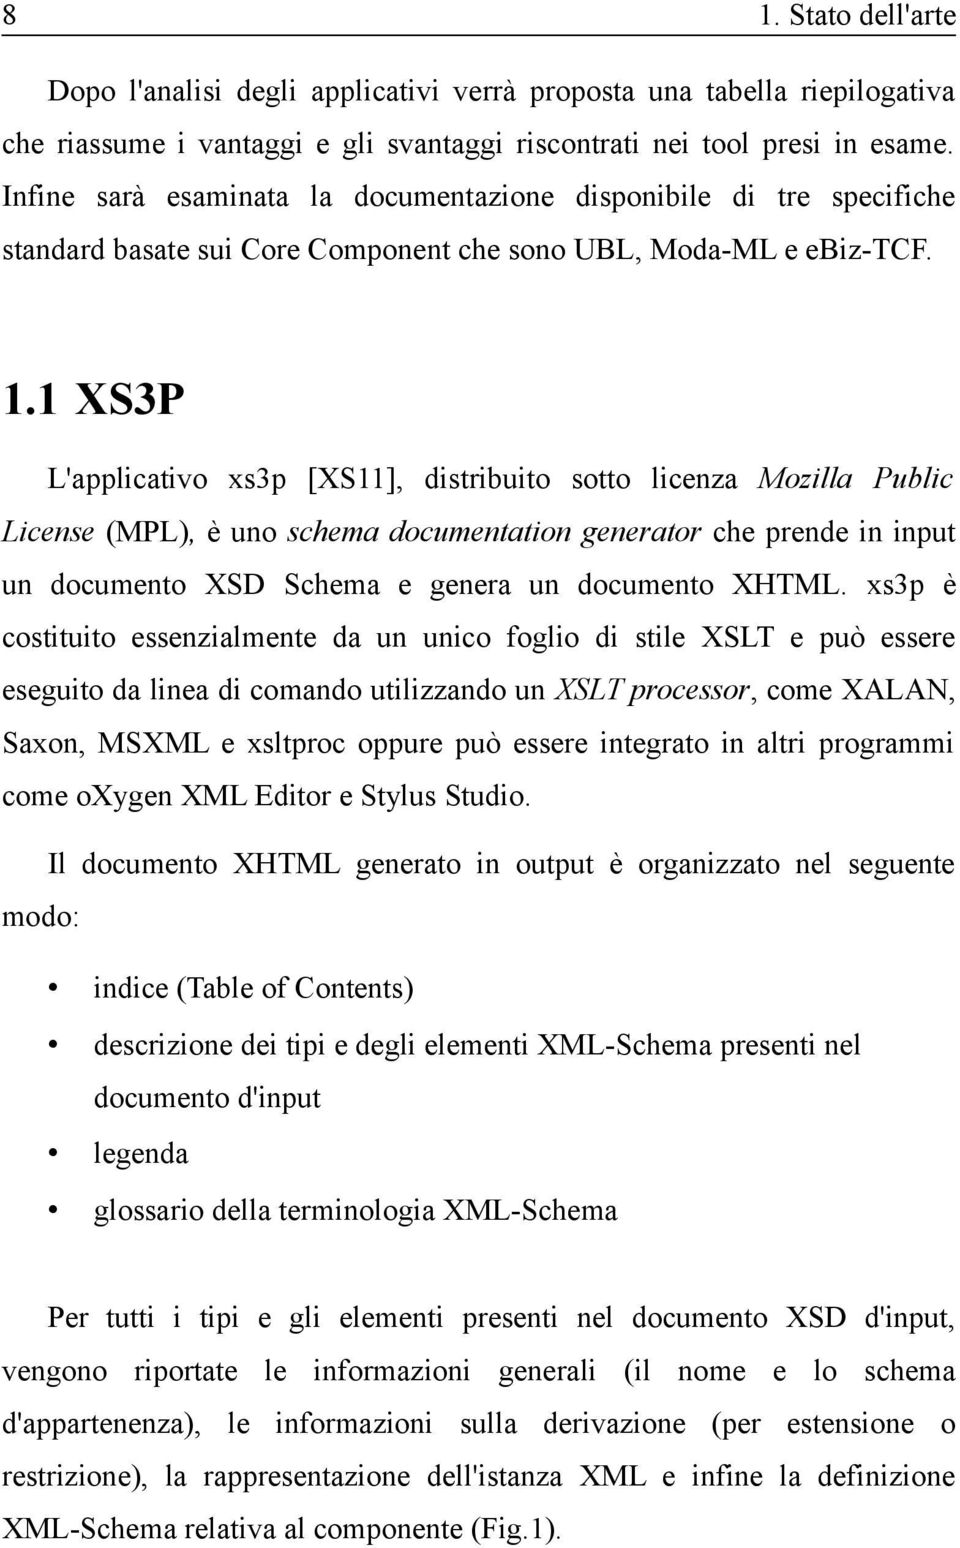 1 XS3P L'applicativo xs3p [XS11], distribuito sotto licenza Mozilla Public License (MPL), è uno schema documentation generator che prende in input un documento XSD Schema e genera un documento XHTML.